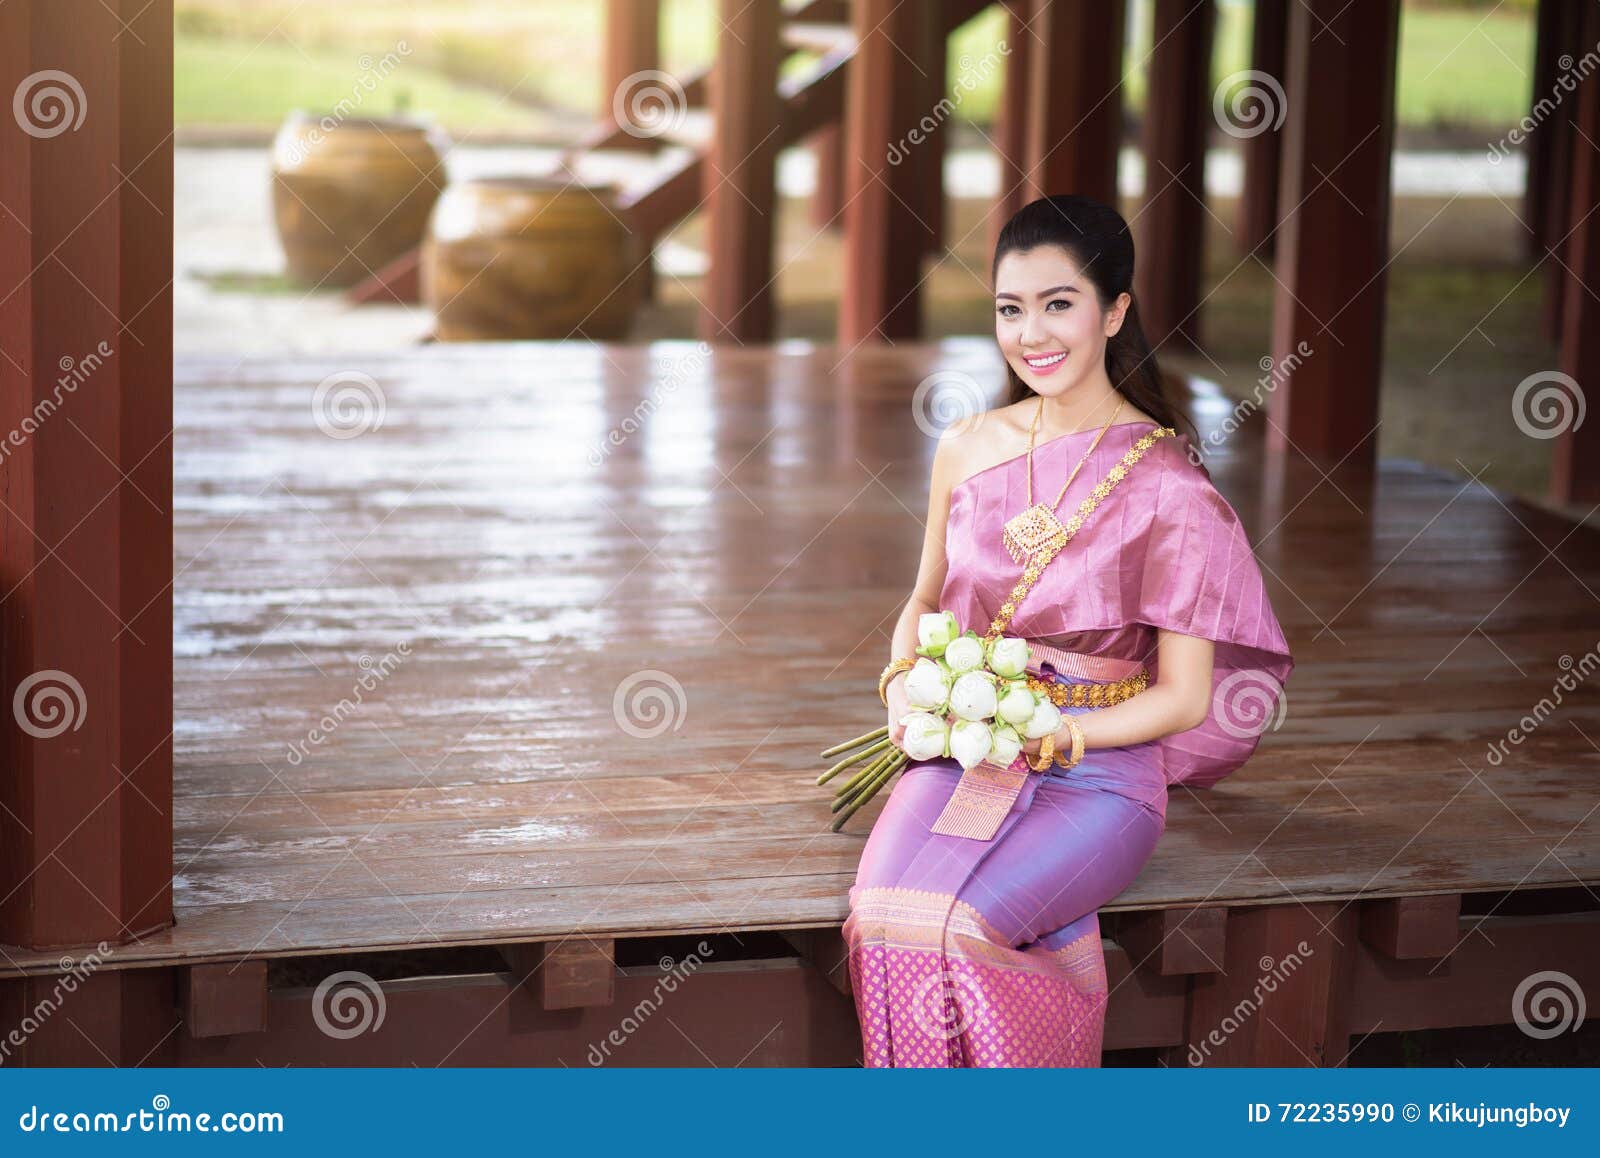 泰国传统服装的美丽的泰国女孩 库存照片. 图片 包括有 迷住, 美女, 布料, 五颜六色, 丝绸, 女性 - 72235788